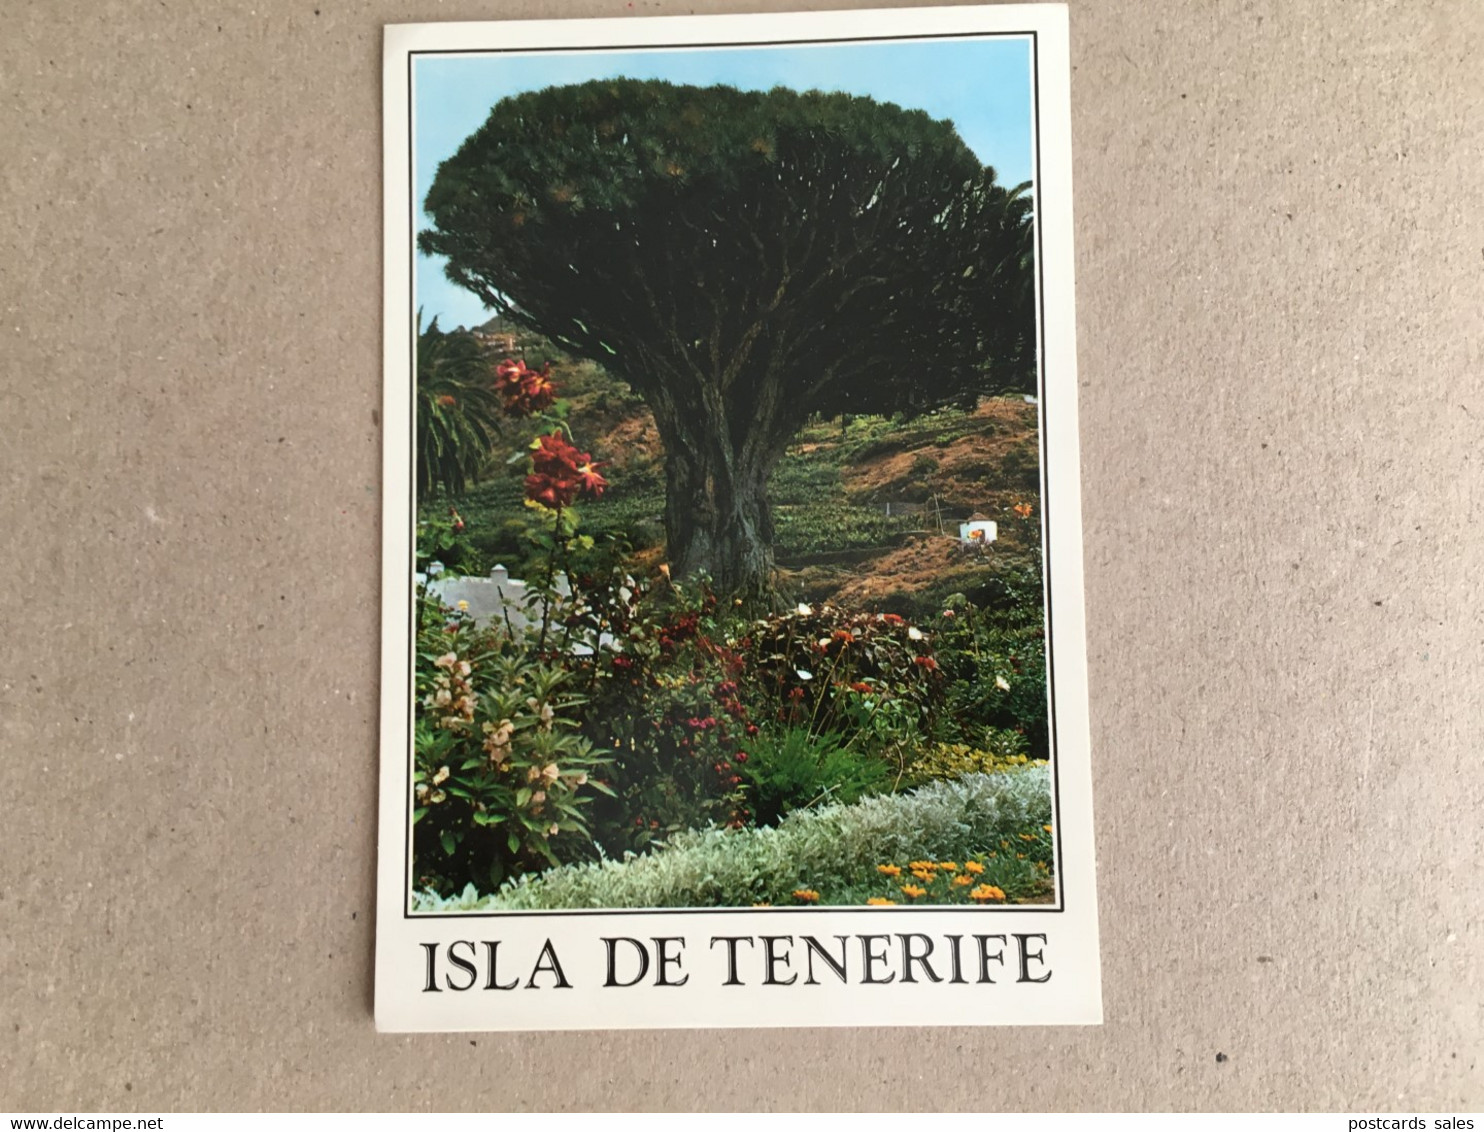 Isla De Tenerife Drago Milenario Drago Tree - Peñón De Vélez De La Gomera